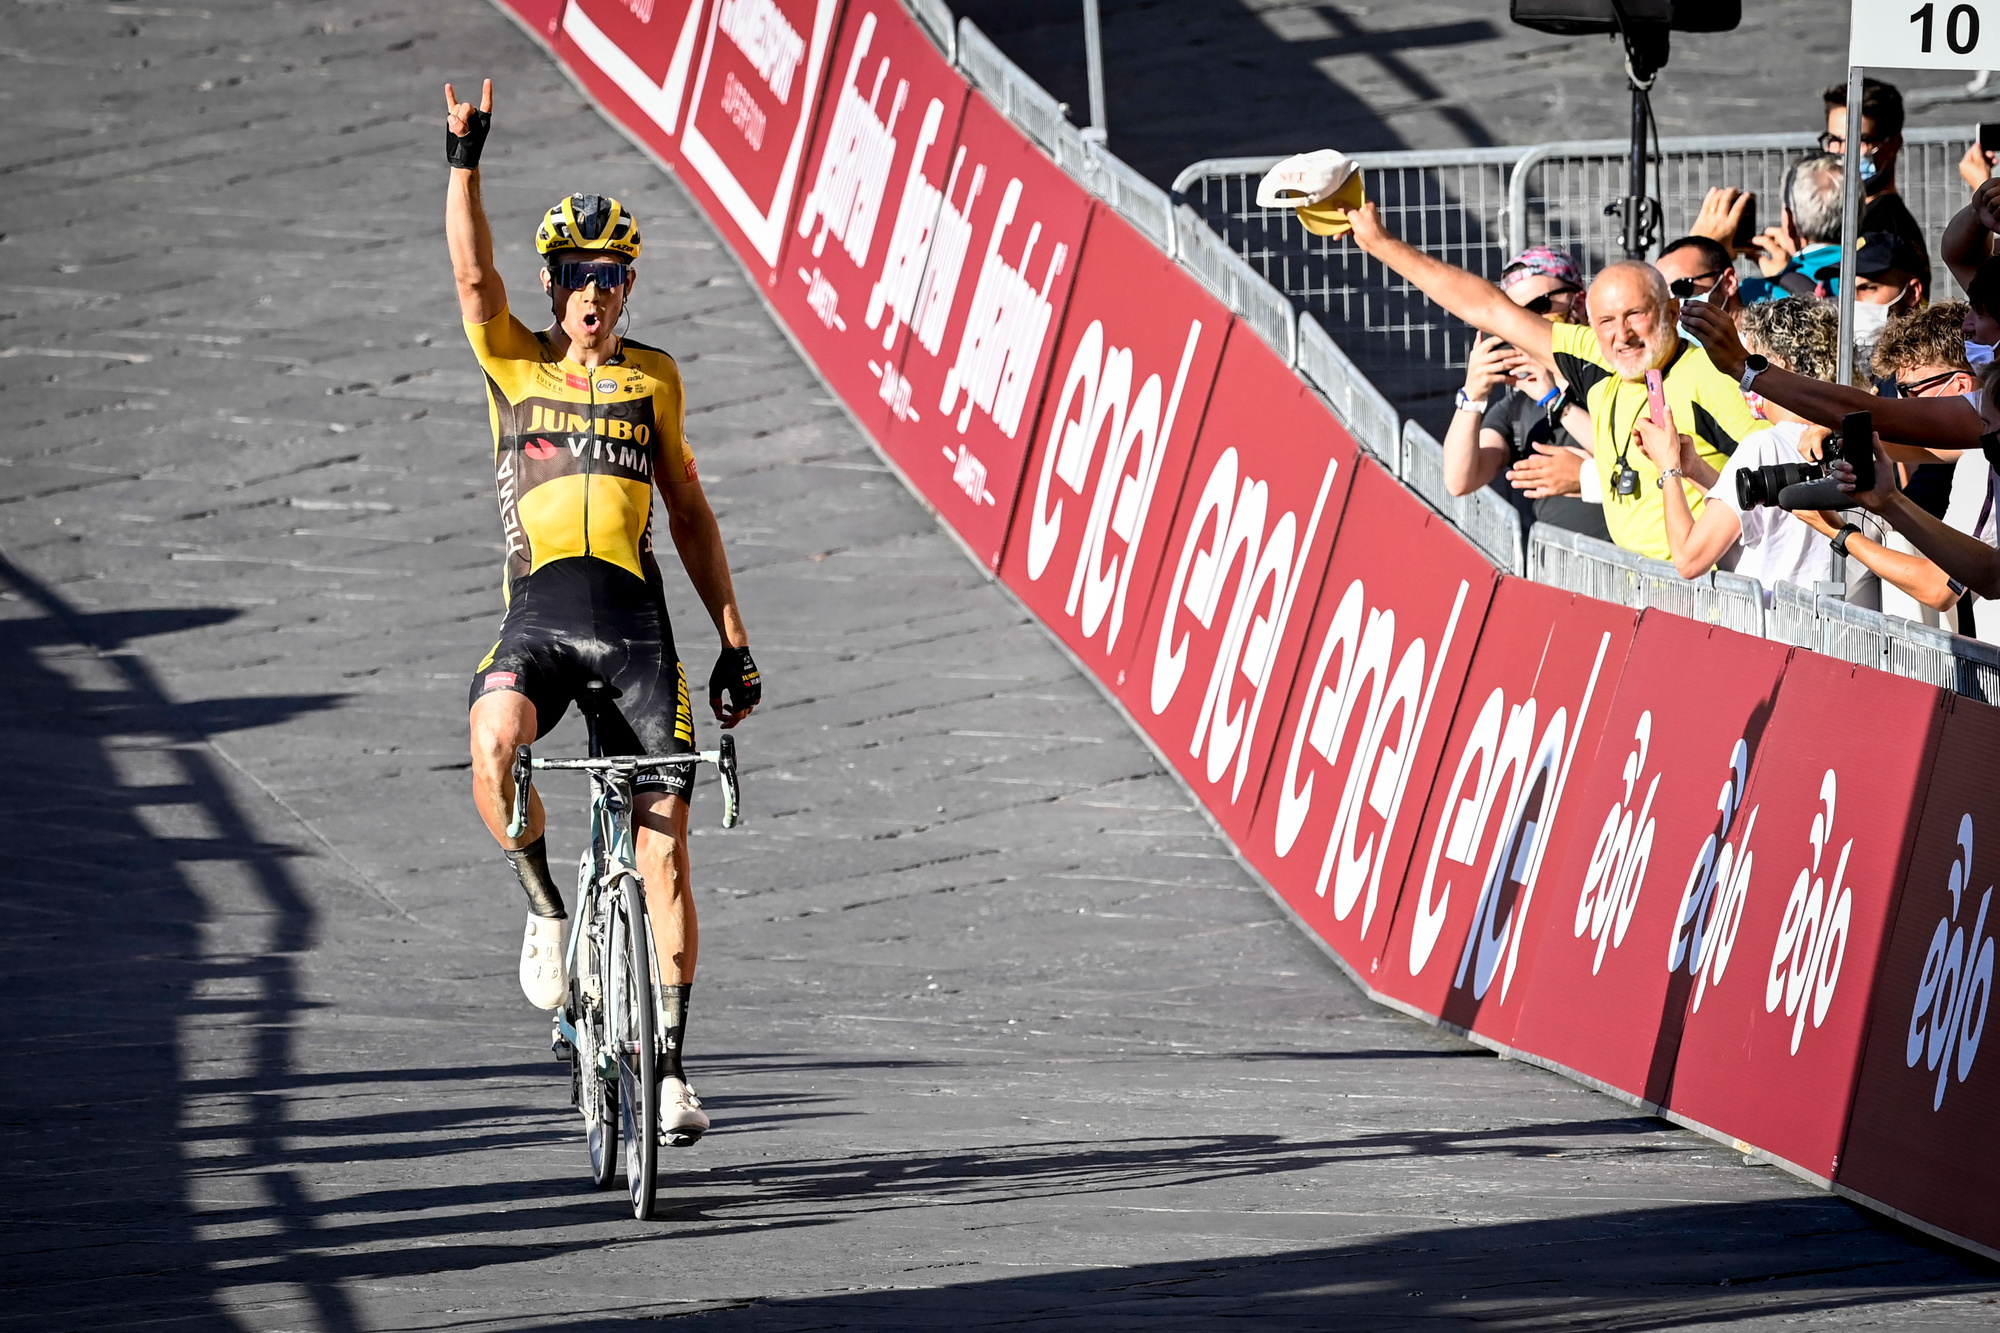 En août 2020, après l'interruption pandémique, Wout Van Aert marque son retour au plus haut niveau après sa grave chute lors du Tour de France 2019. Il remportera Milan-San Remo au sprint contre Julian Alaphilippe une semaine plus tard., belga